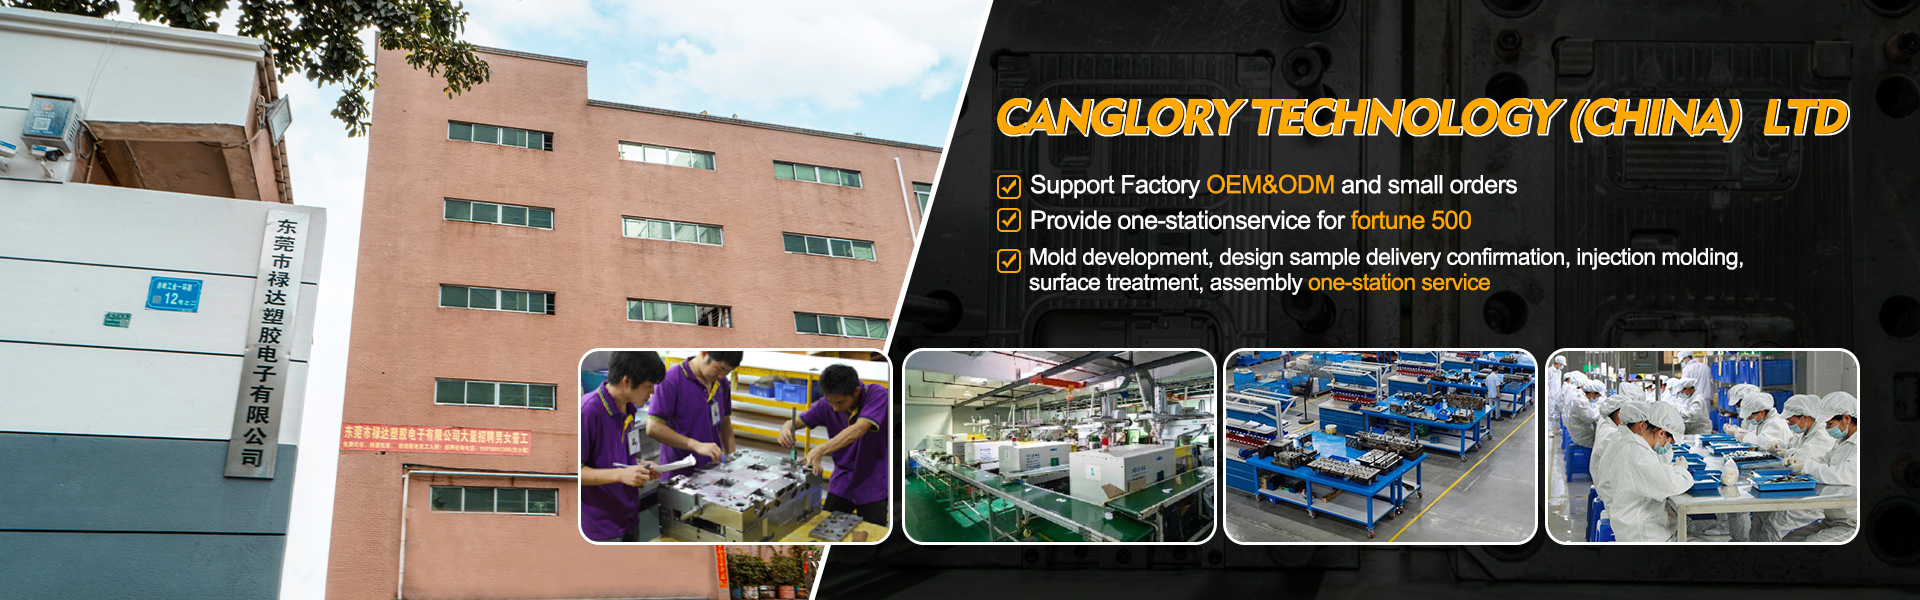 Casa - Modano, iniezione, produttore di attrezzature originali|Canglory Technology (China) Ltd